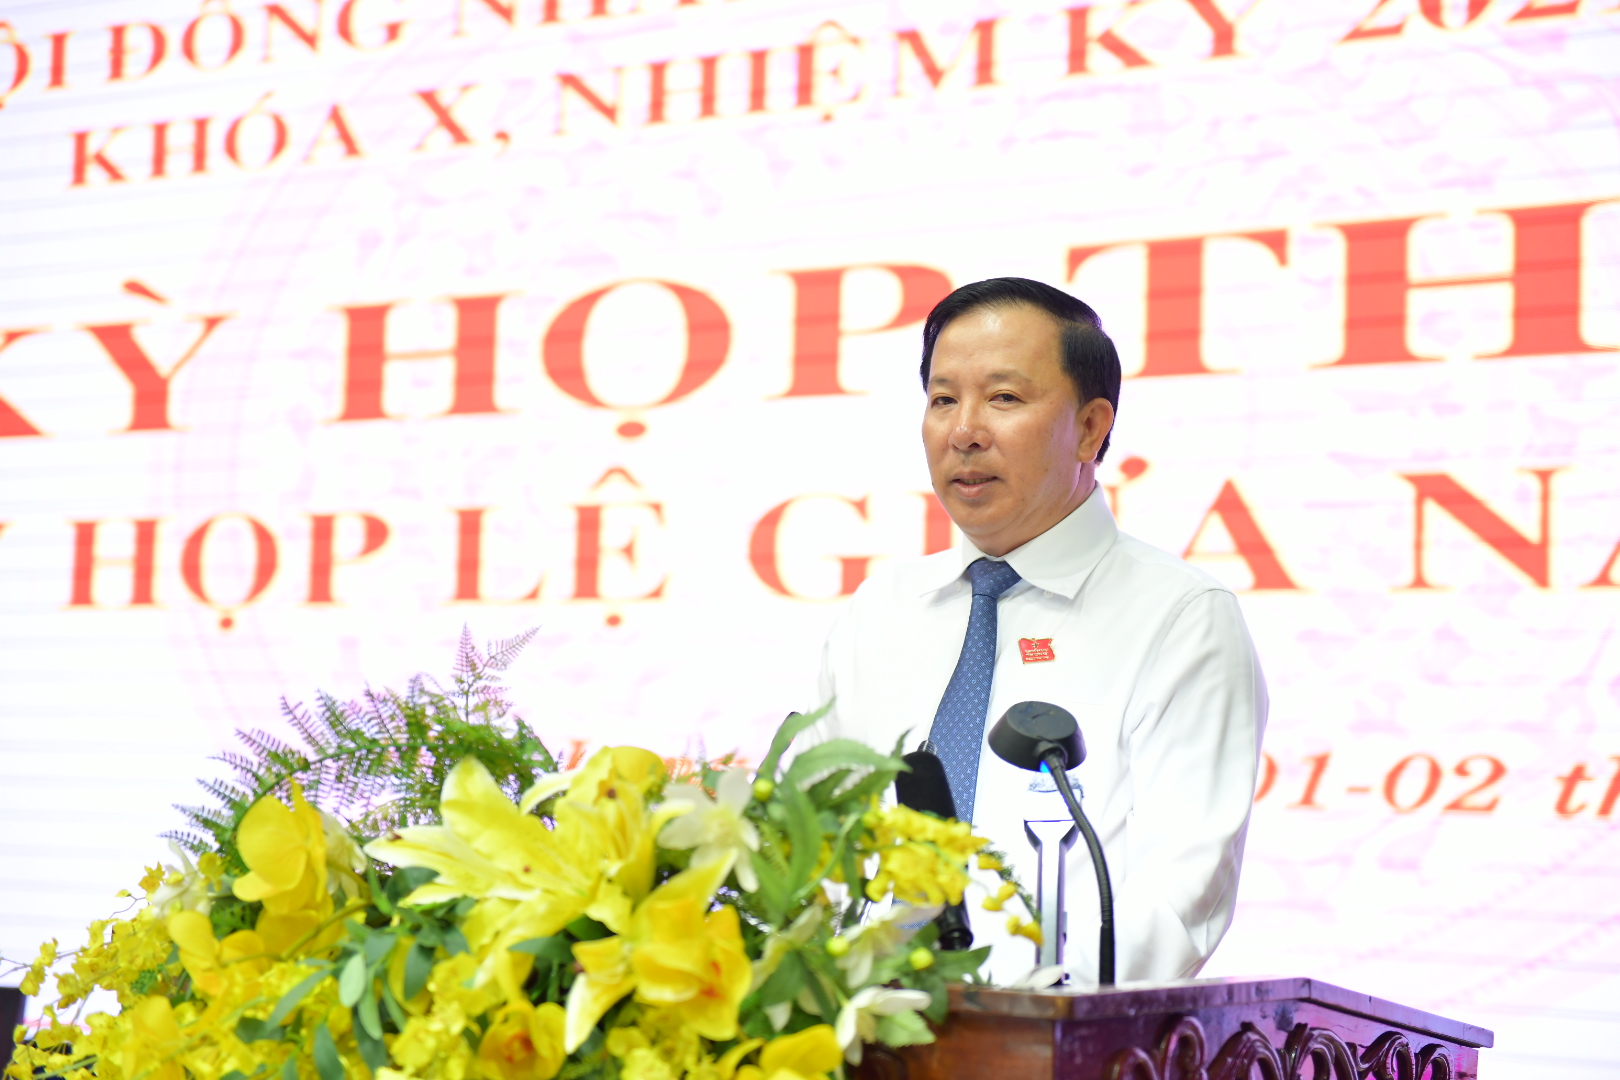  Phó Bí thư Tỉnh ủy, Chủ tịch UBND tỉnh Nguyễn Văn Út trả lời làm rõ các nội dung liên quan